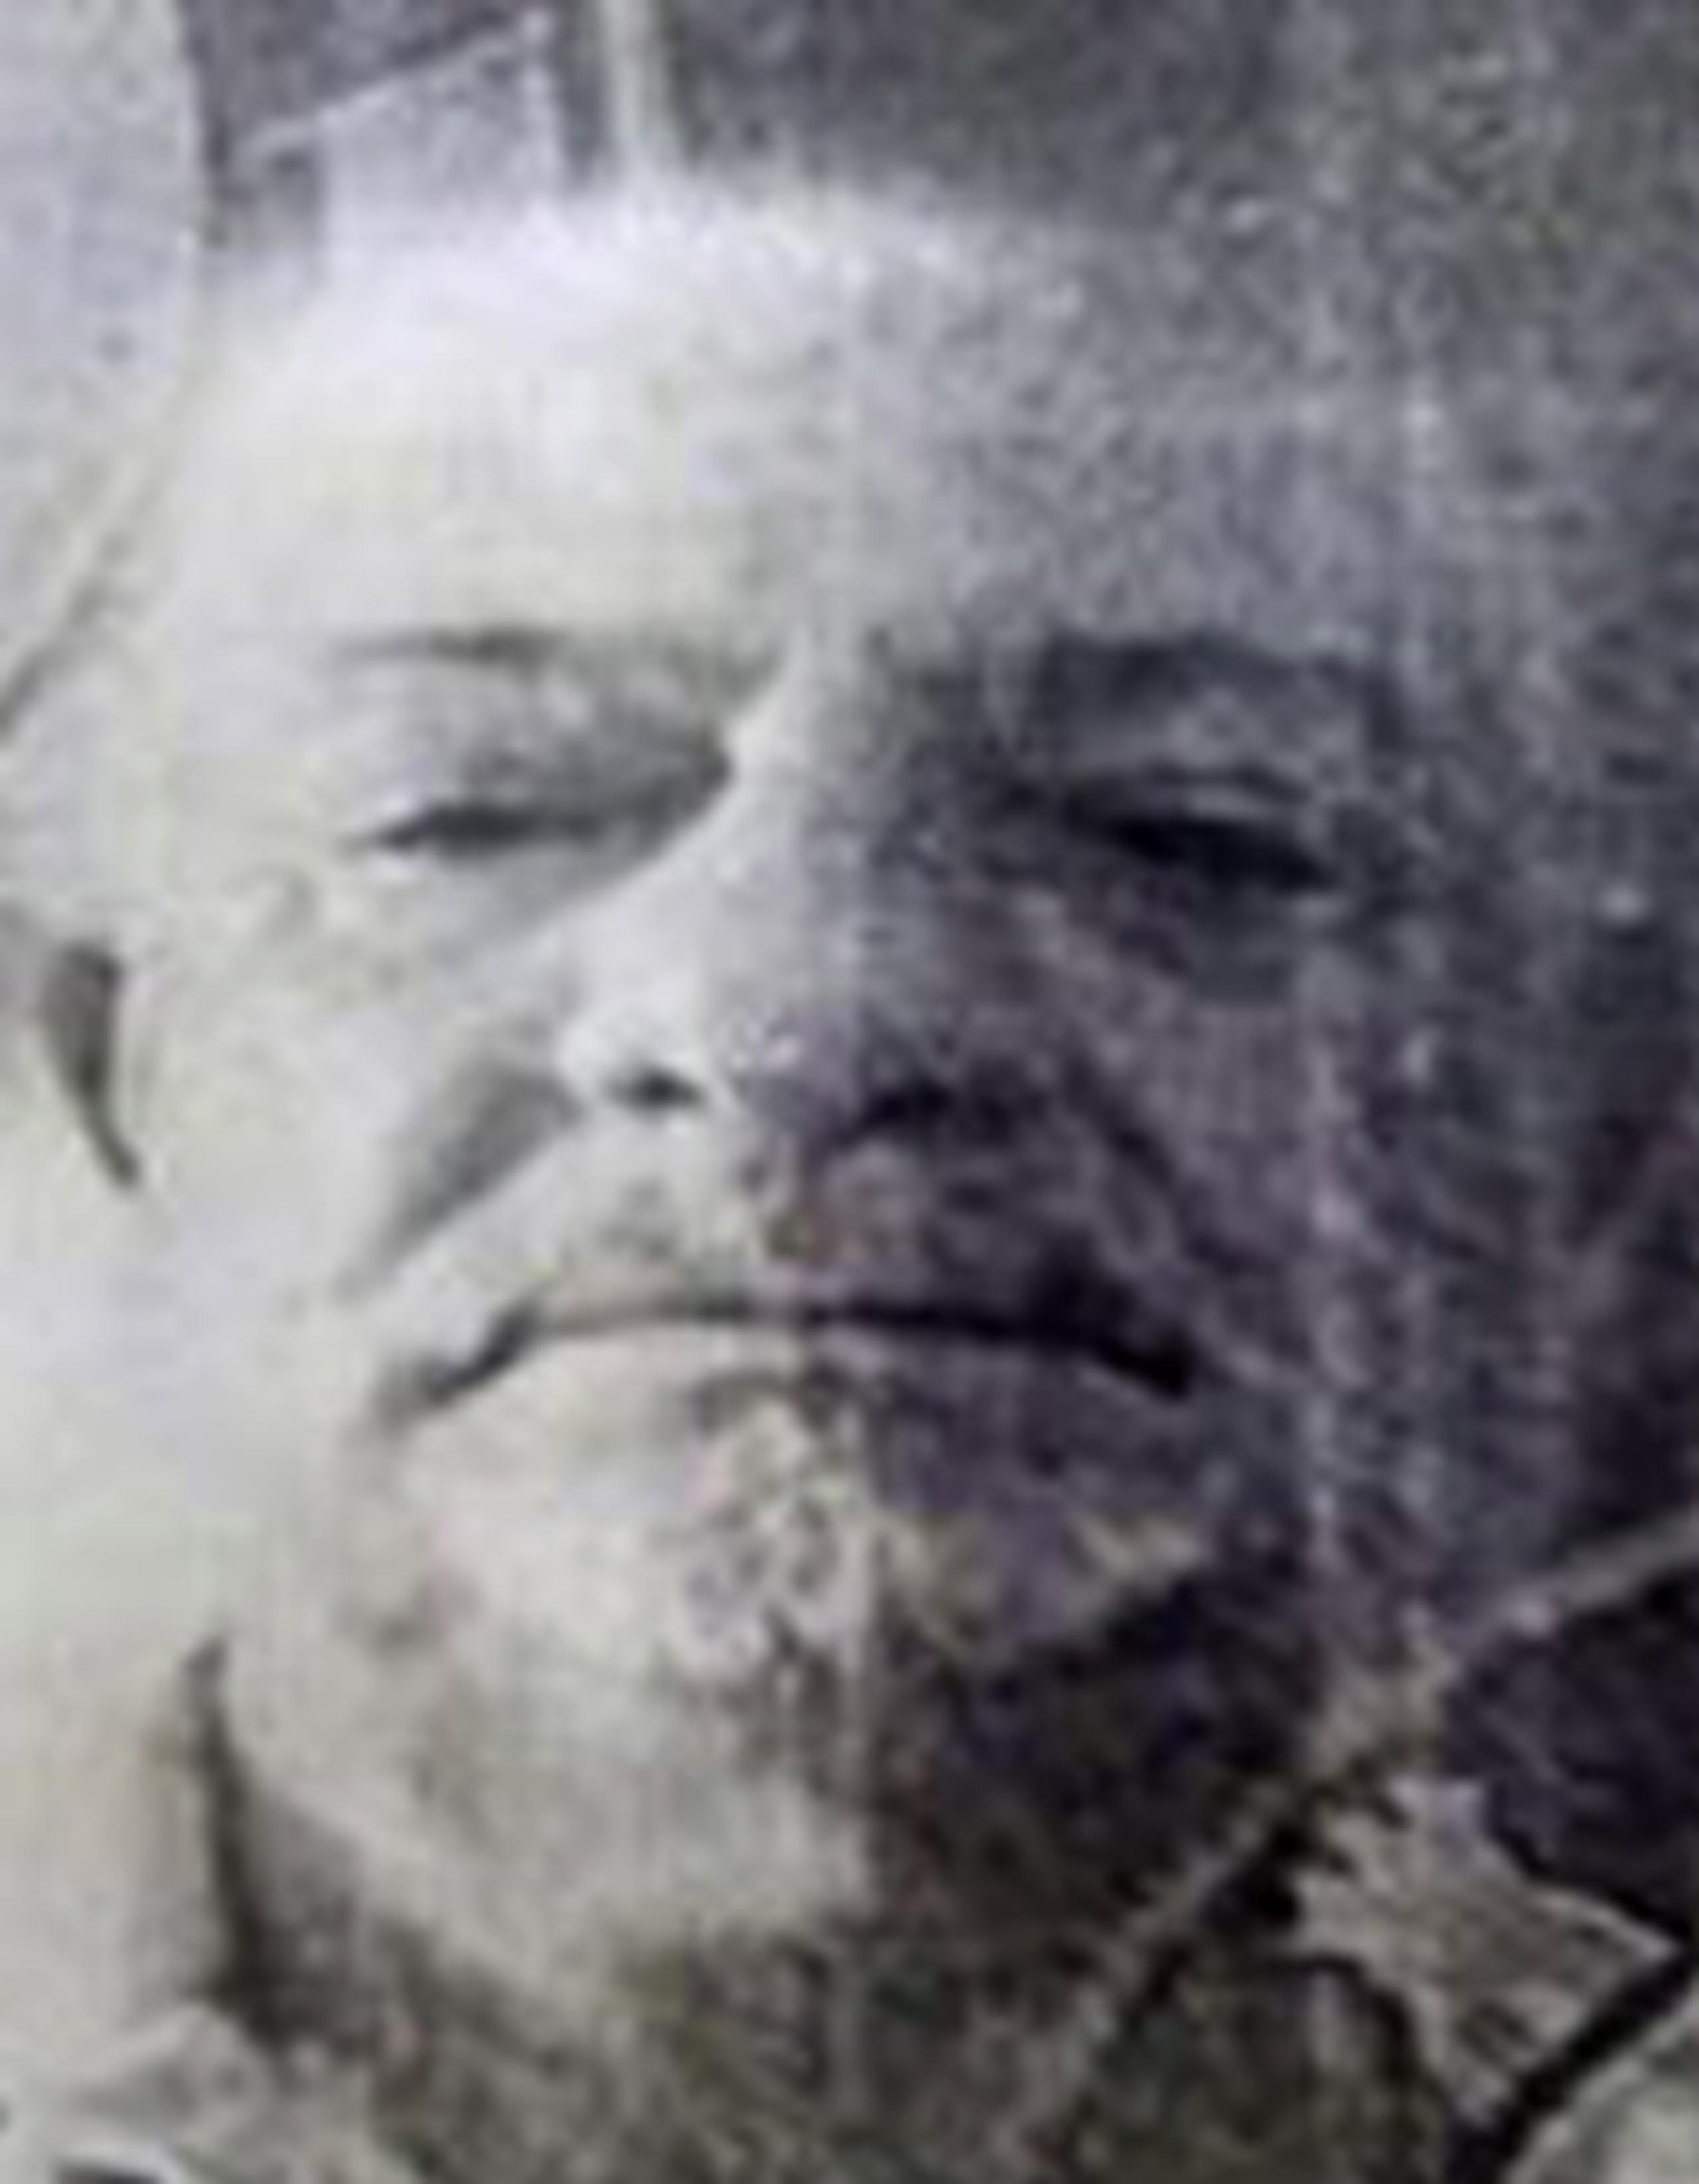 Foto suministrada por la Policía del sospechoso, quien fue descrito como de tez blanca y de 50 a 60 años de edad. (Archivo)